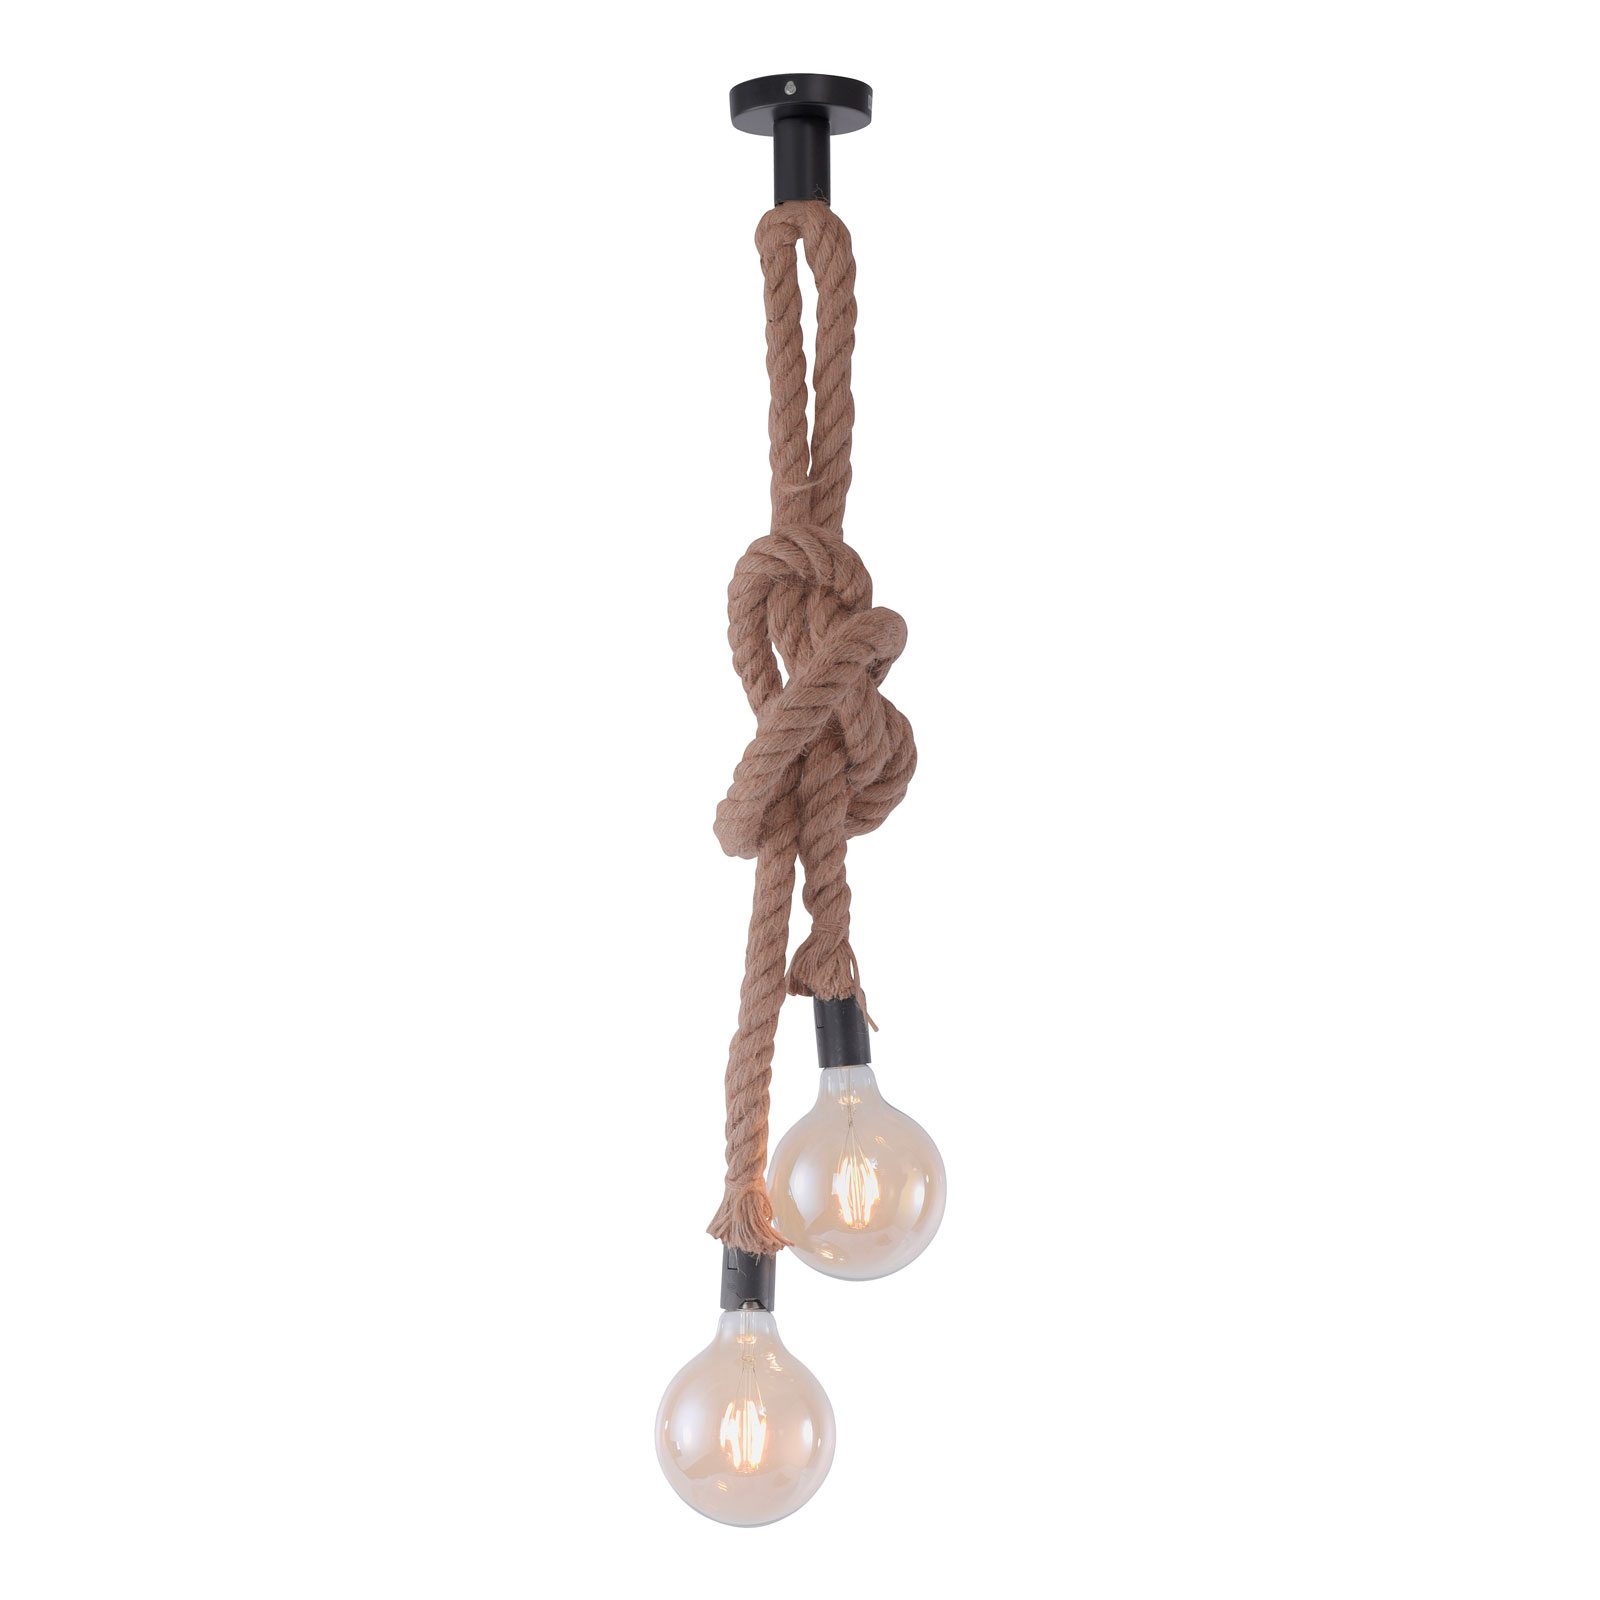 Suspension Rope avec corde, à 2 lampes